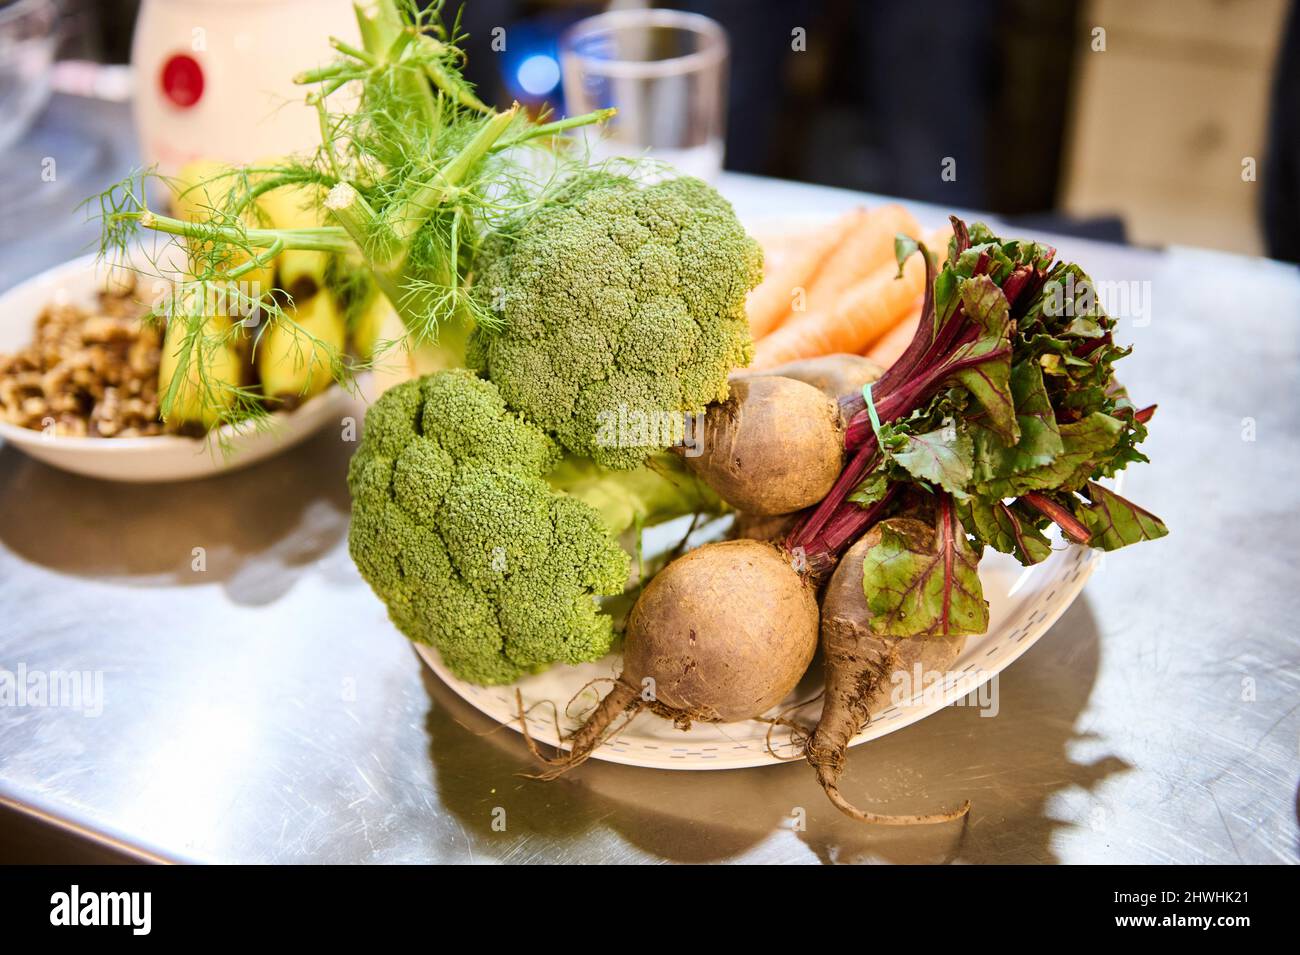 Piatto con broccoli, barbabietole e altri ingredienti in cucina Foto Stock